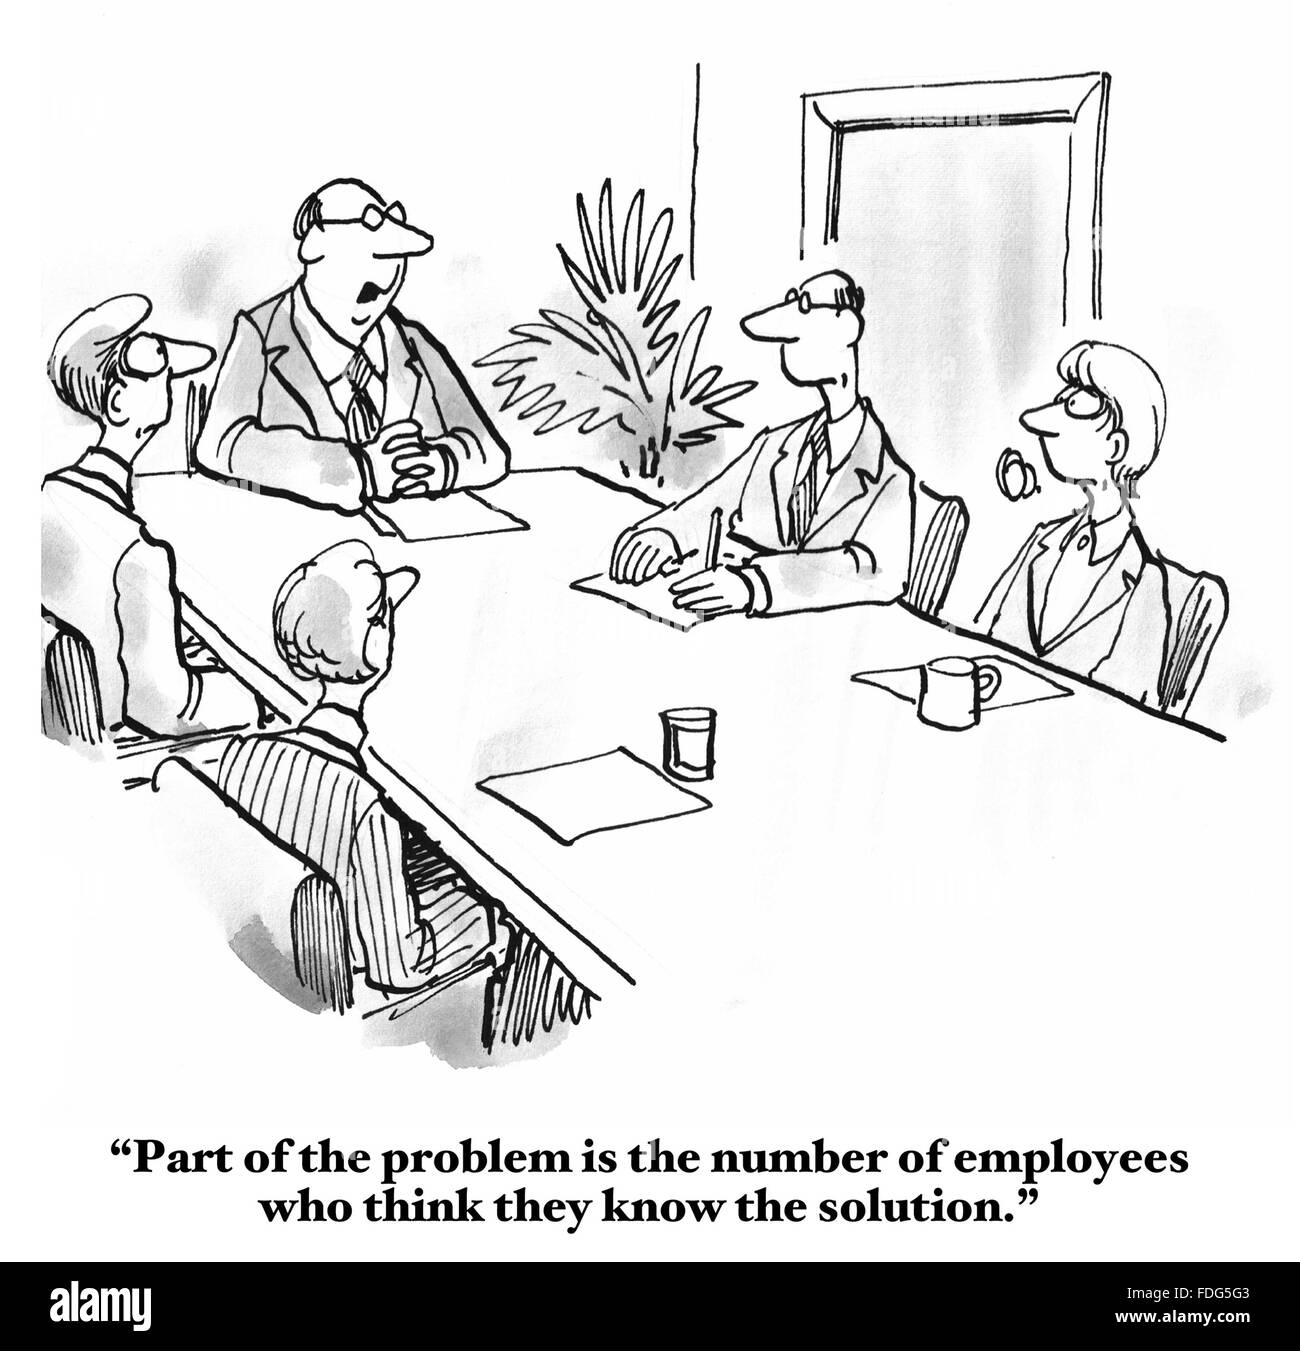 Karikatur von einem Geschäftstreffen, wo der Chef verärgert ist, dass die Mitarbeiter alle denken, sie kennen die Antwort auf das Problem. Stockfoto